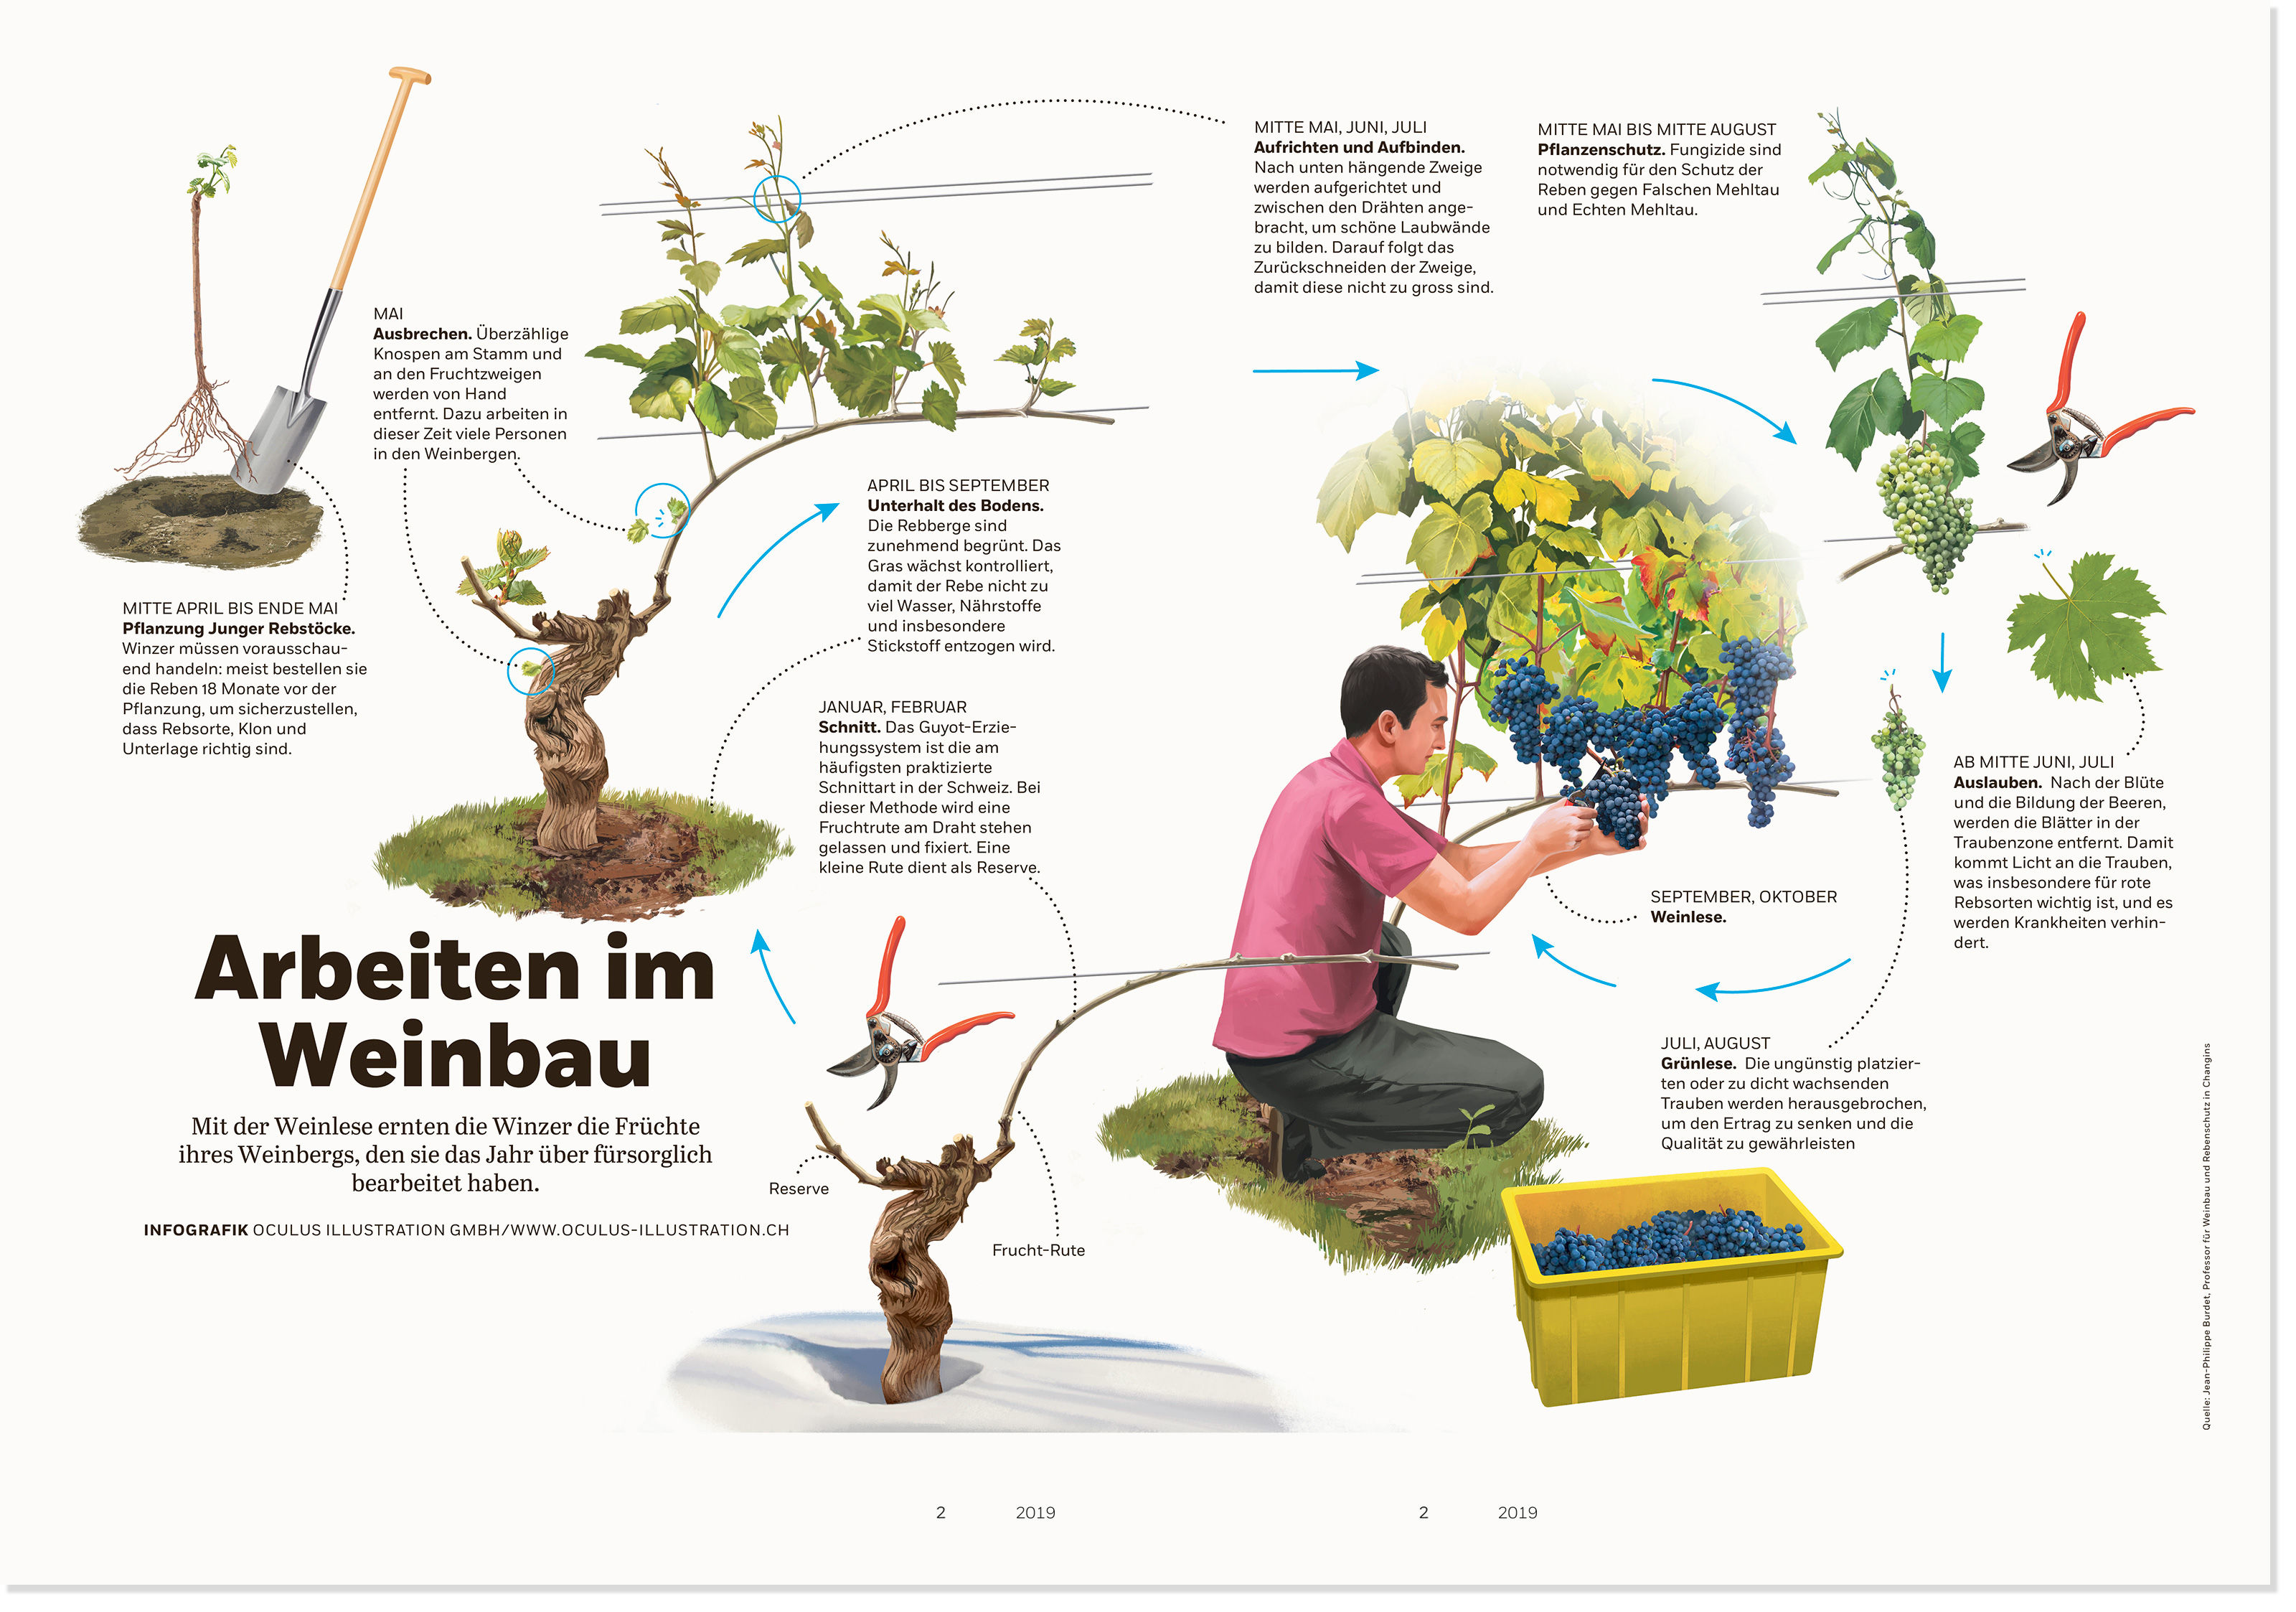 oculus-illustration-coopzeitung-infografik-winzer